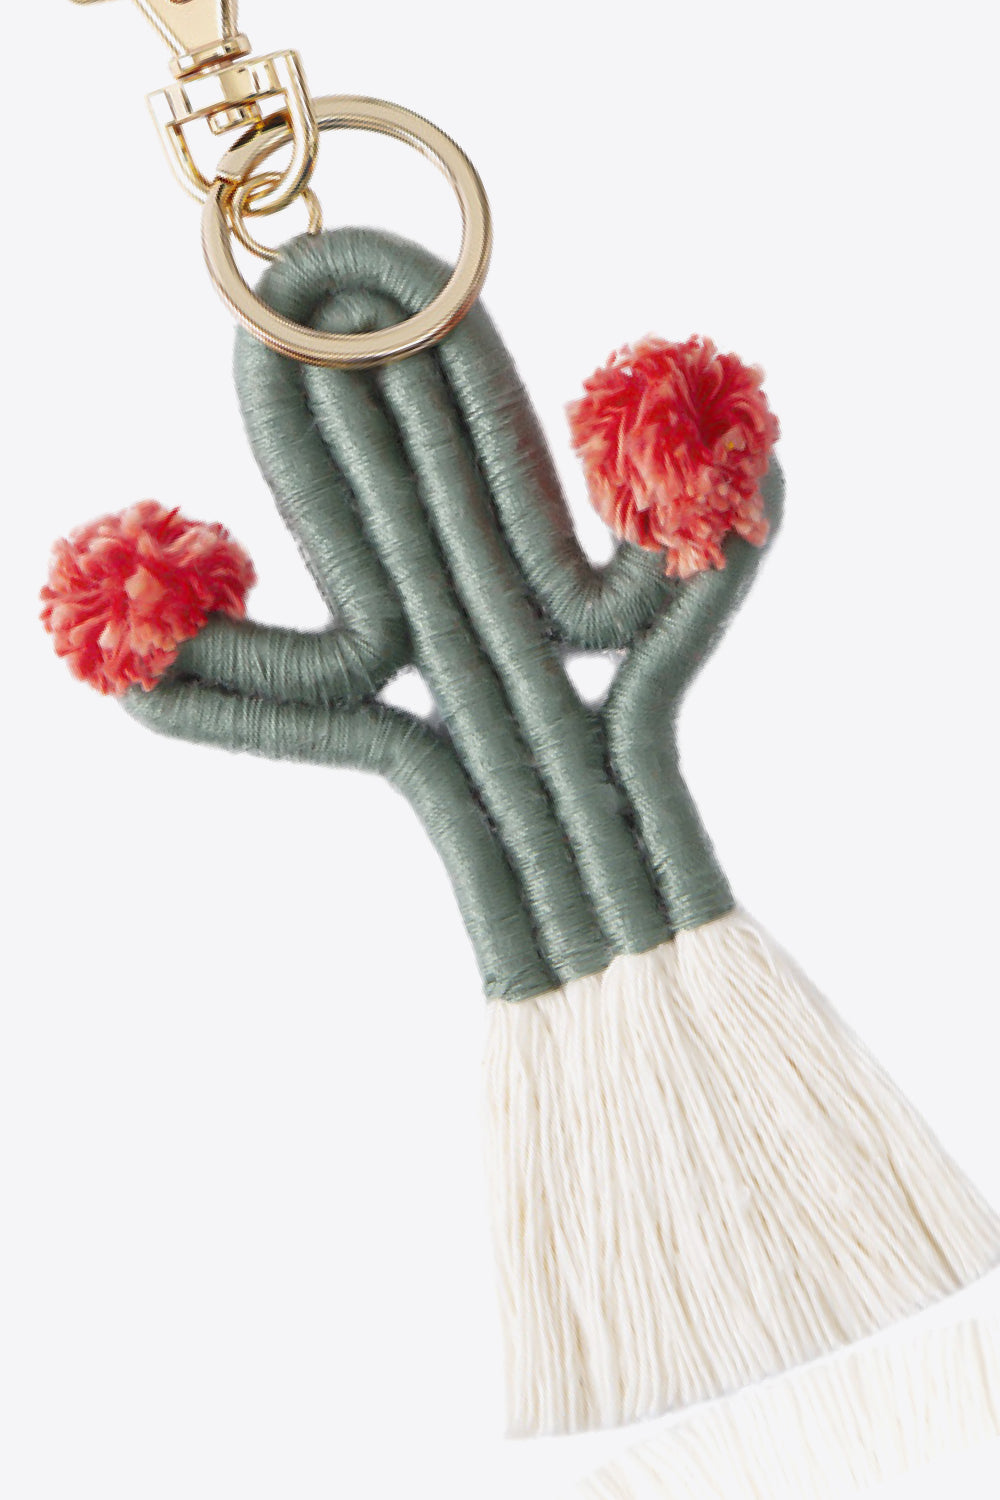 Cactus Keychain with Fringe